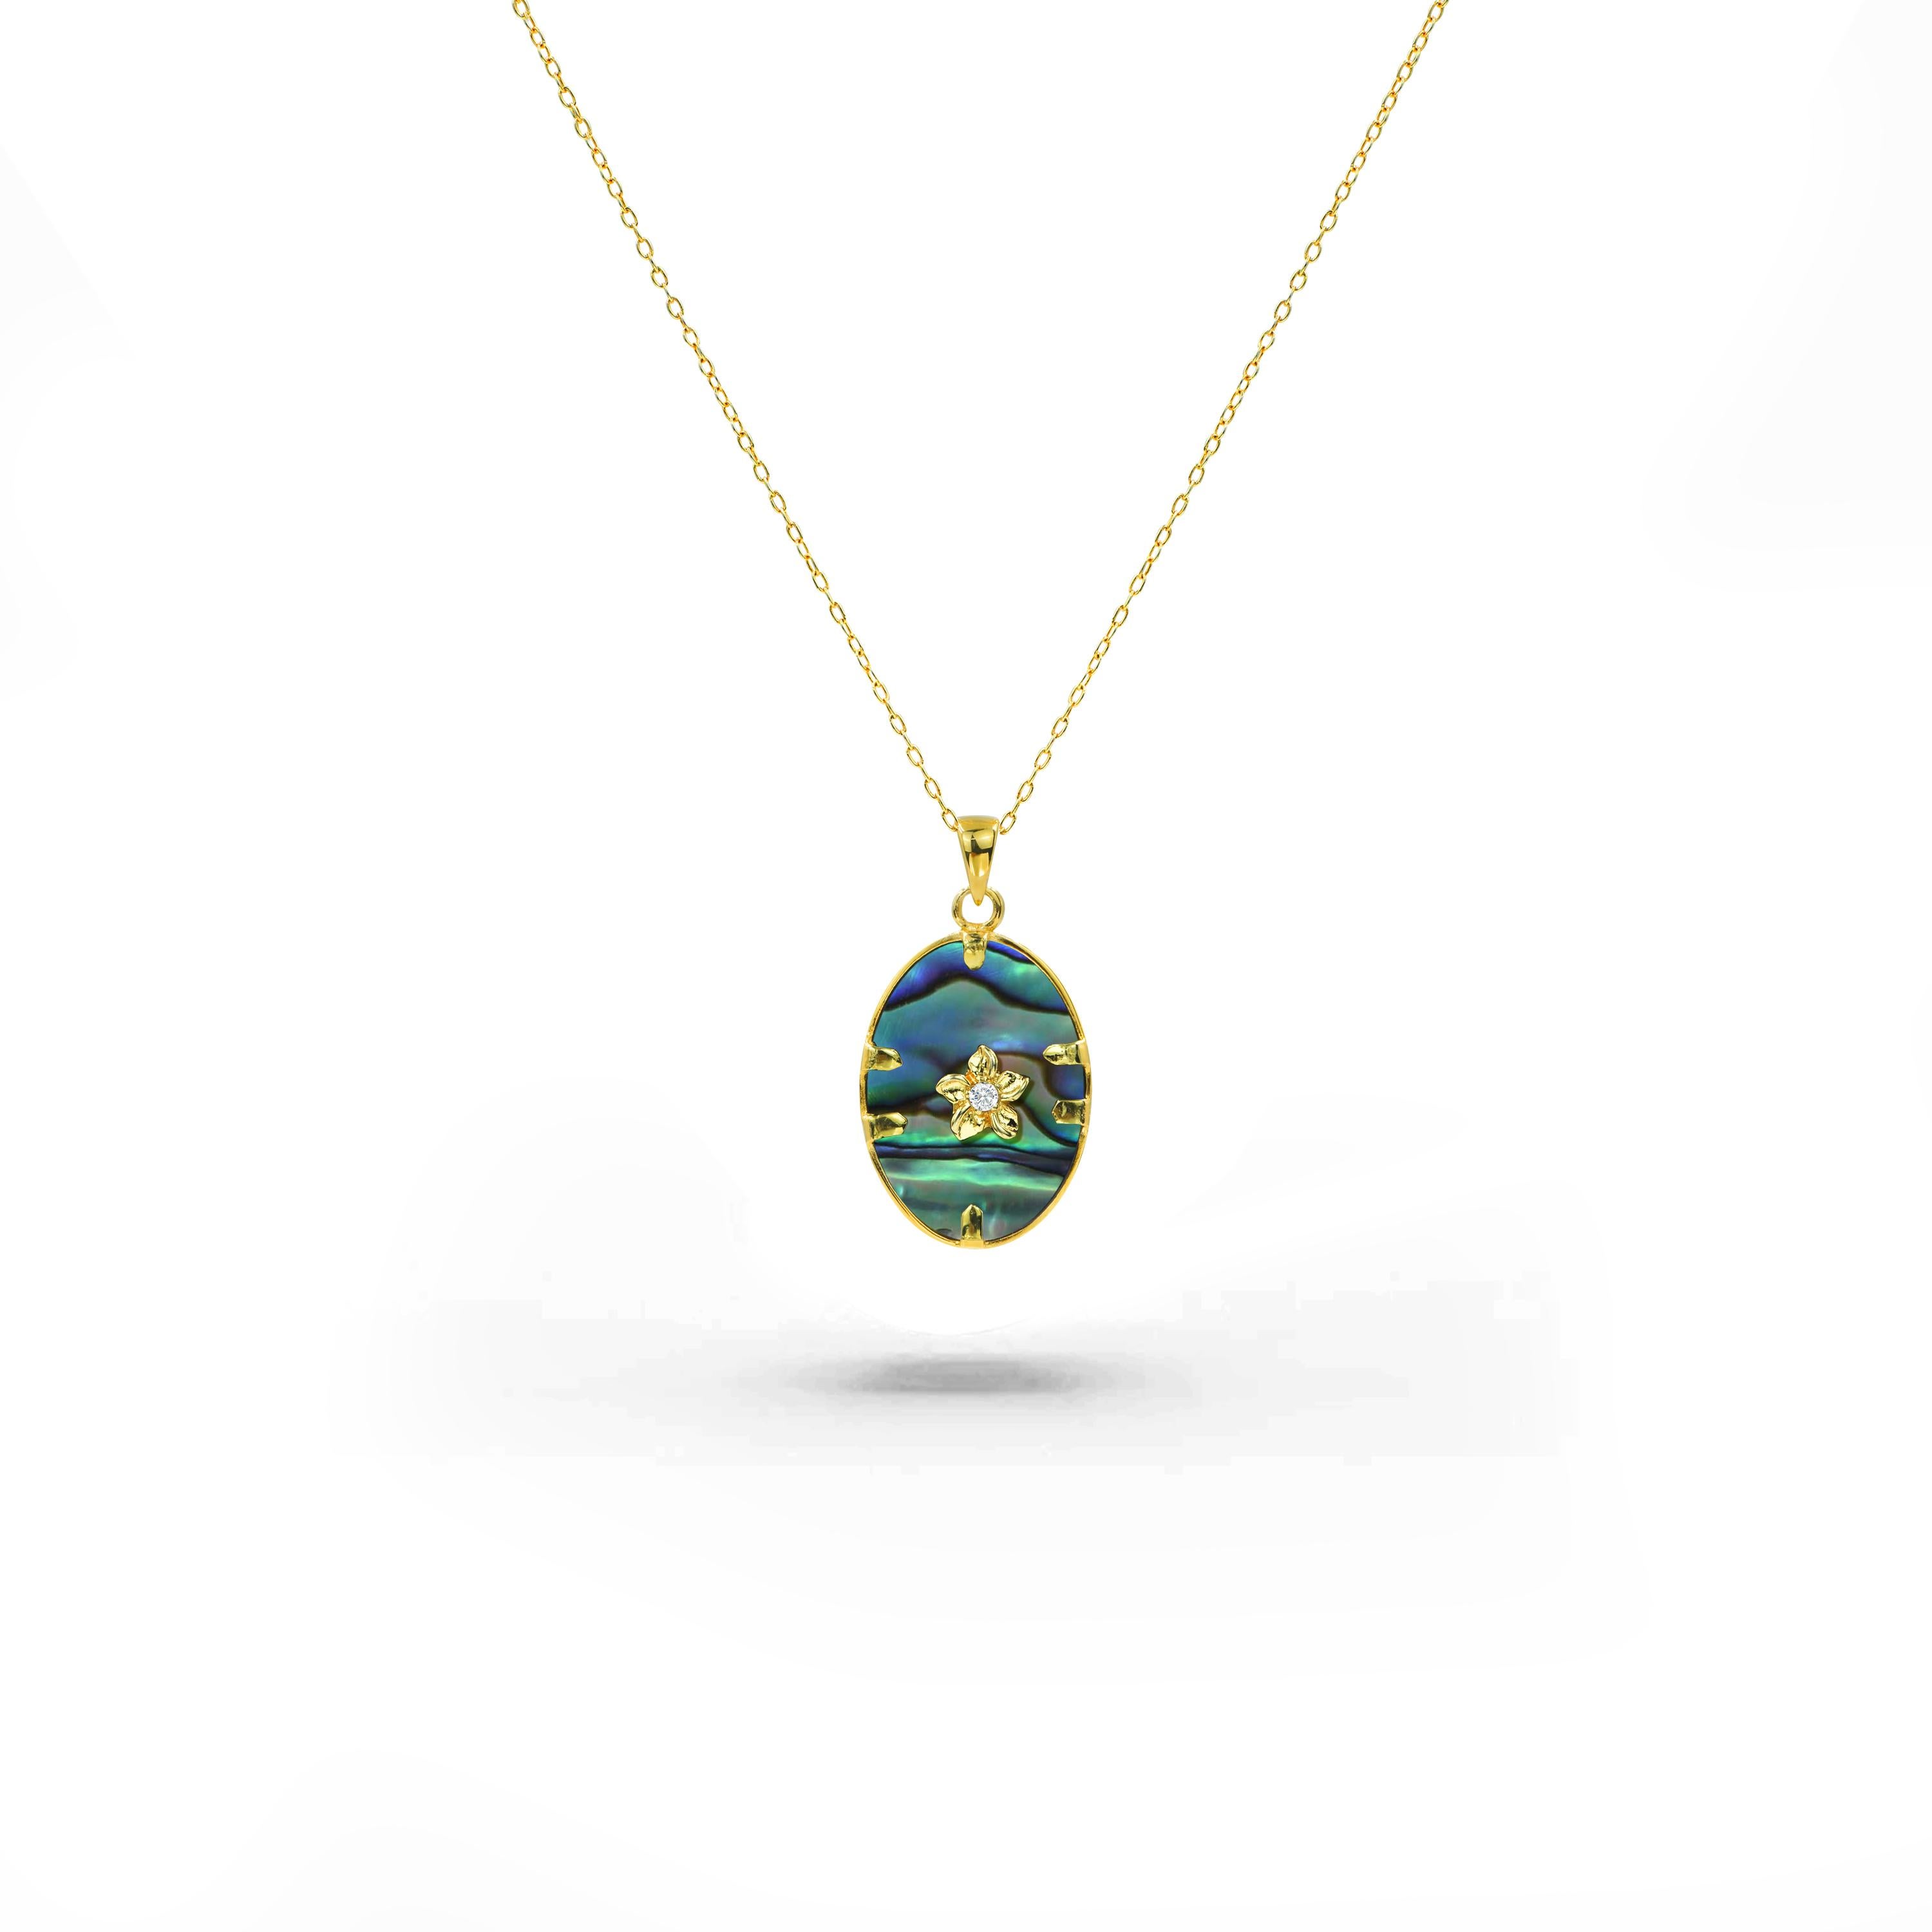 Unsere außergewöhnliche Halskette mit 18 Karat Goldfüllung ist eine Verkörperung von Eleganz, die den Glanz von Edelsteinen Ihrer Wahl mit der zeitlosen Anziehungskraft natürlicher Diamanten nahtlos verbindet. Dieses fesselnde Stück zeugt von